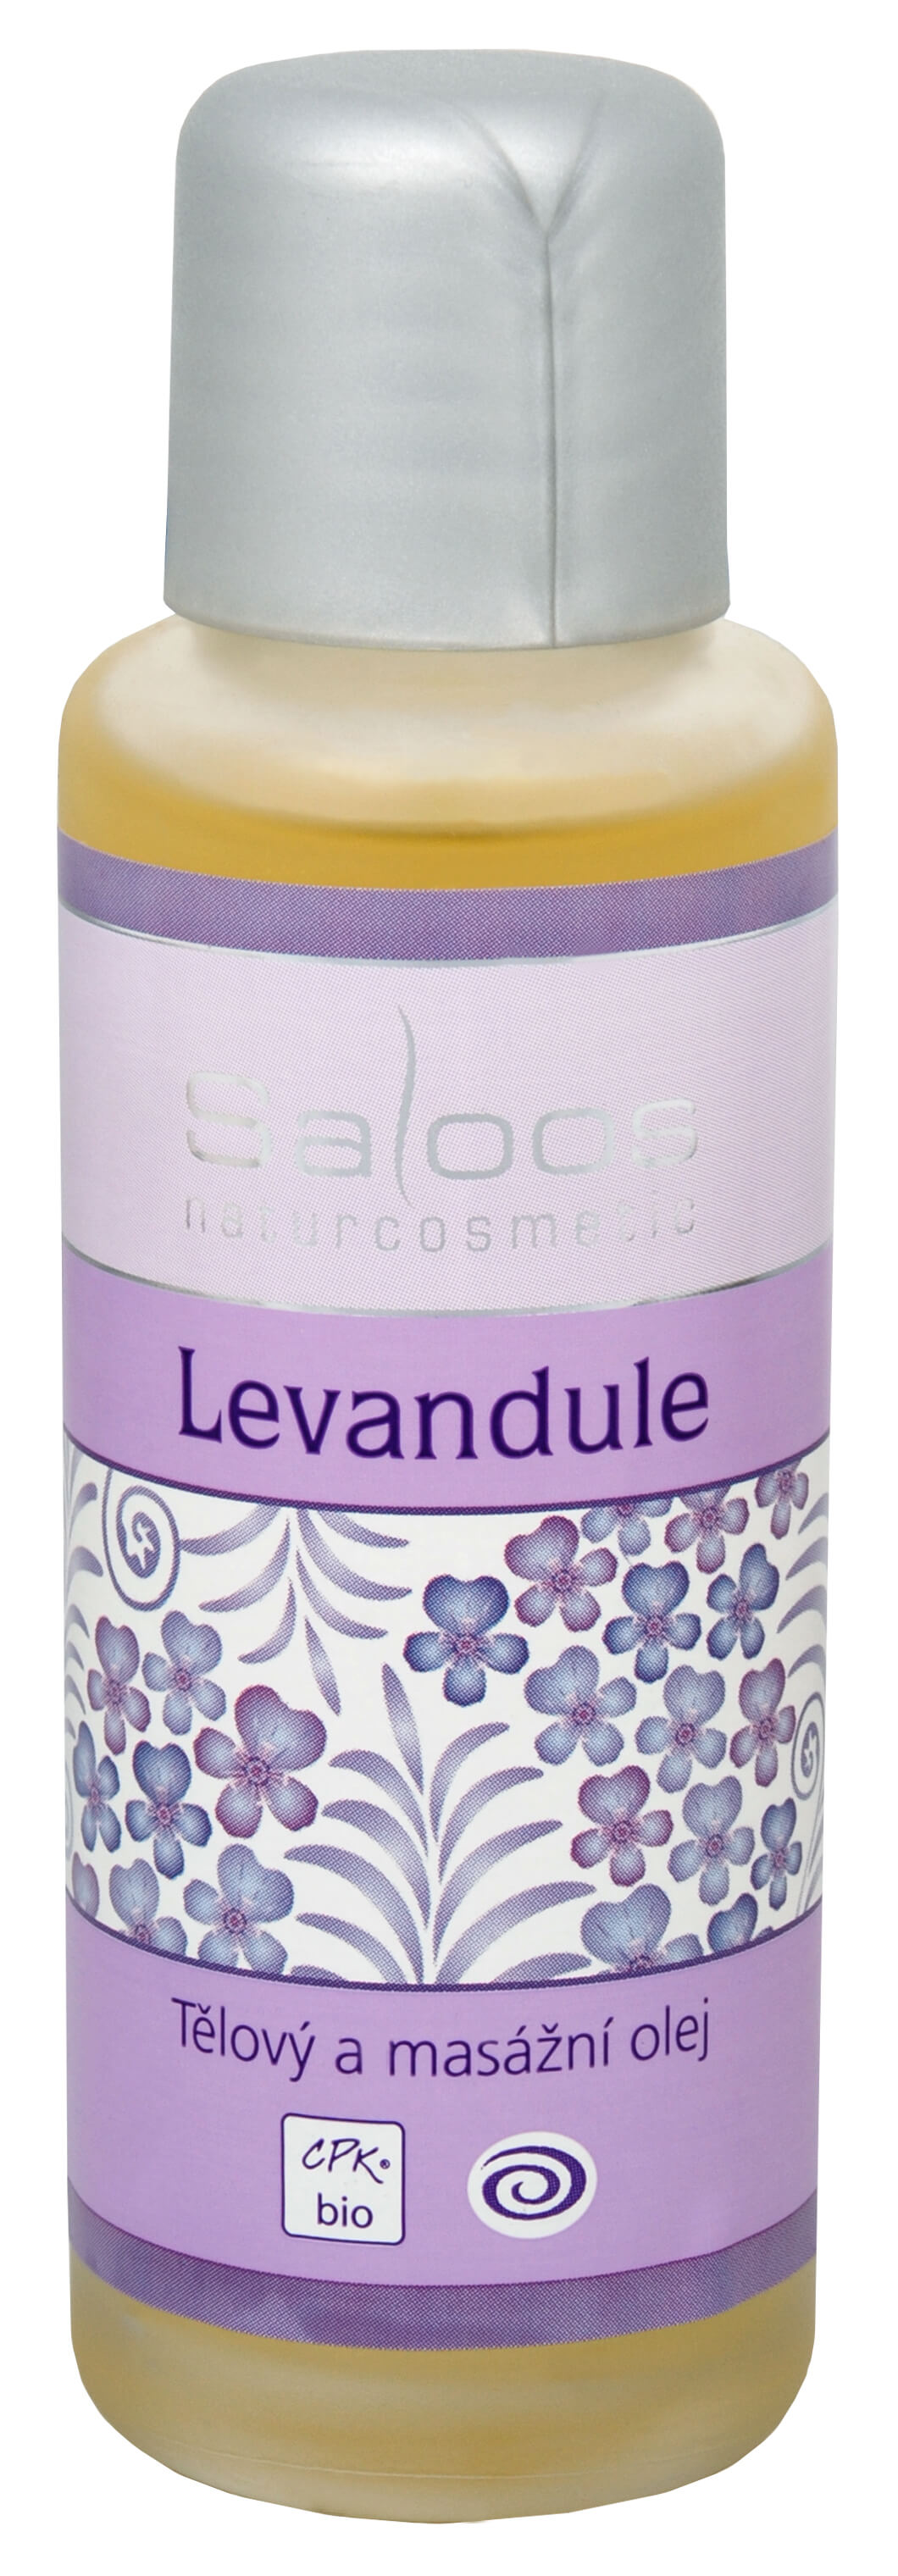 Saloos Bio telový a masážny olej - Levanduľa 125 ml + 2 mesiace na vrátenie tovaru